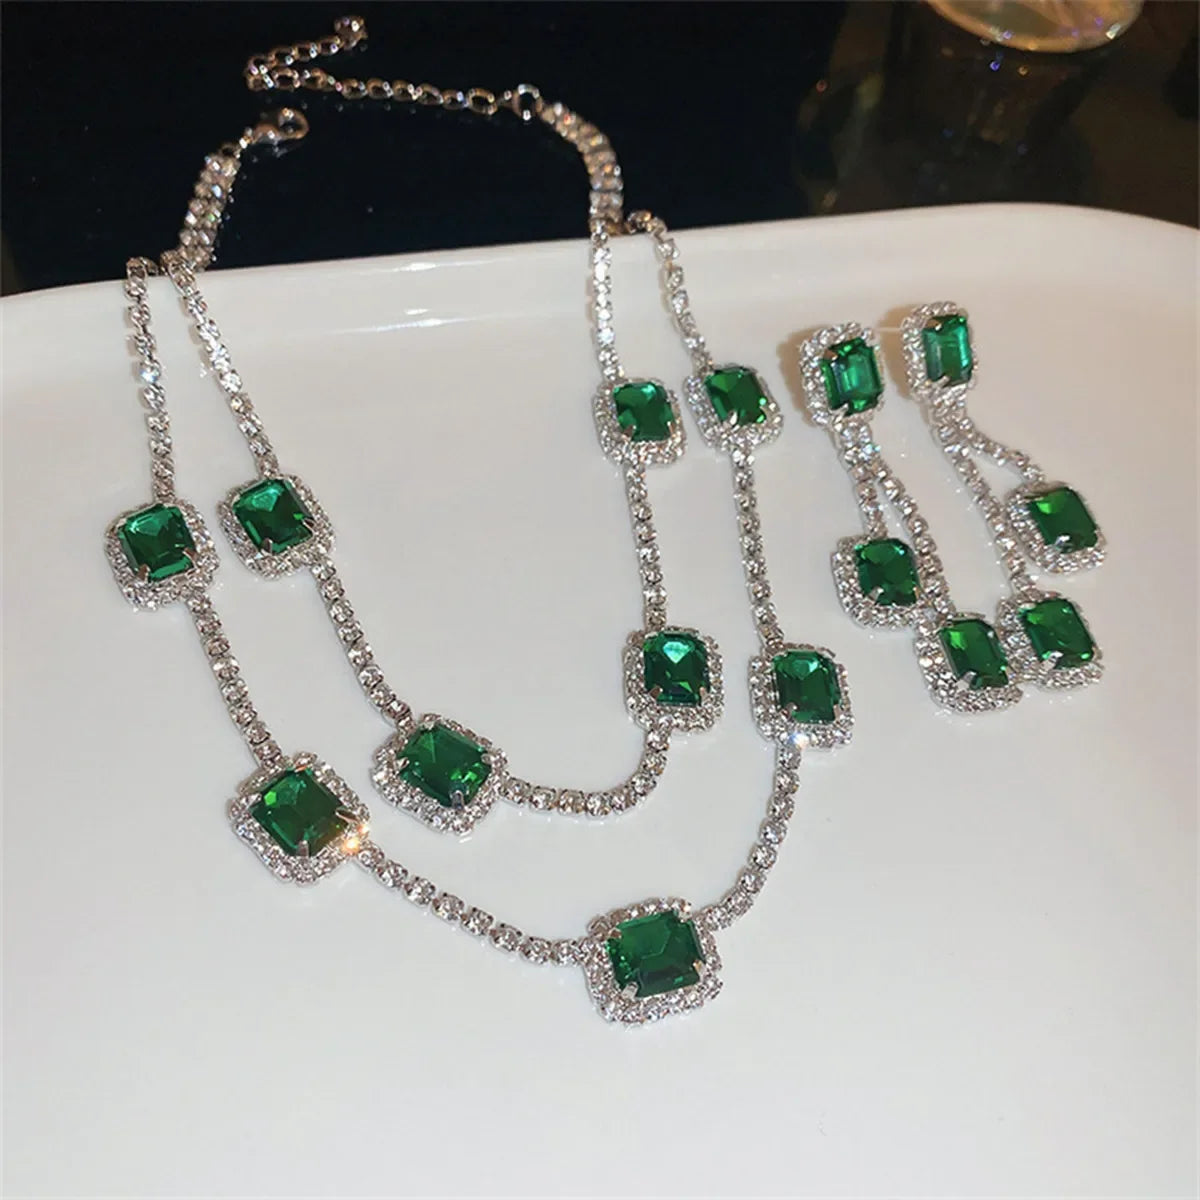 Luxury Necklace Earrings for Women Dark Blue Water Drop Crystal Earrings Wedding Bride Jewelry Sets - Hiron Store